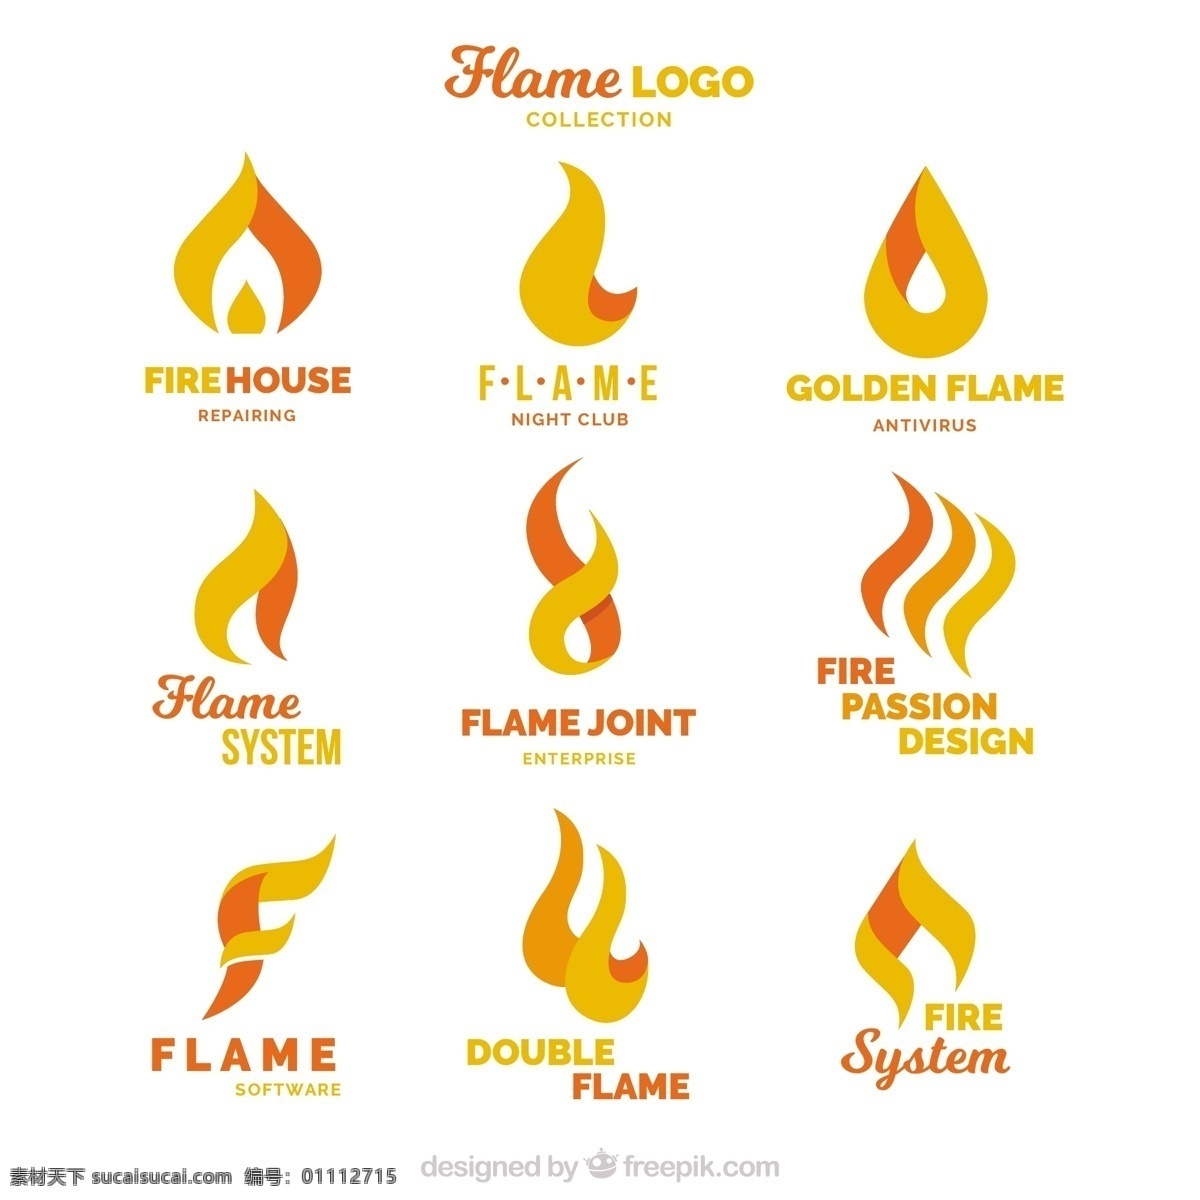 平面设计 中 九 火焰 标识 集 标志 商业 抽象 线条 标签 火灾 色彩 平面 企业 能源 公司 抽象标识 企业标识 品牌 现代 符号